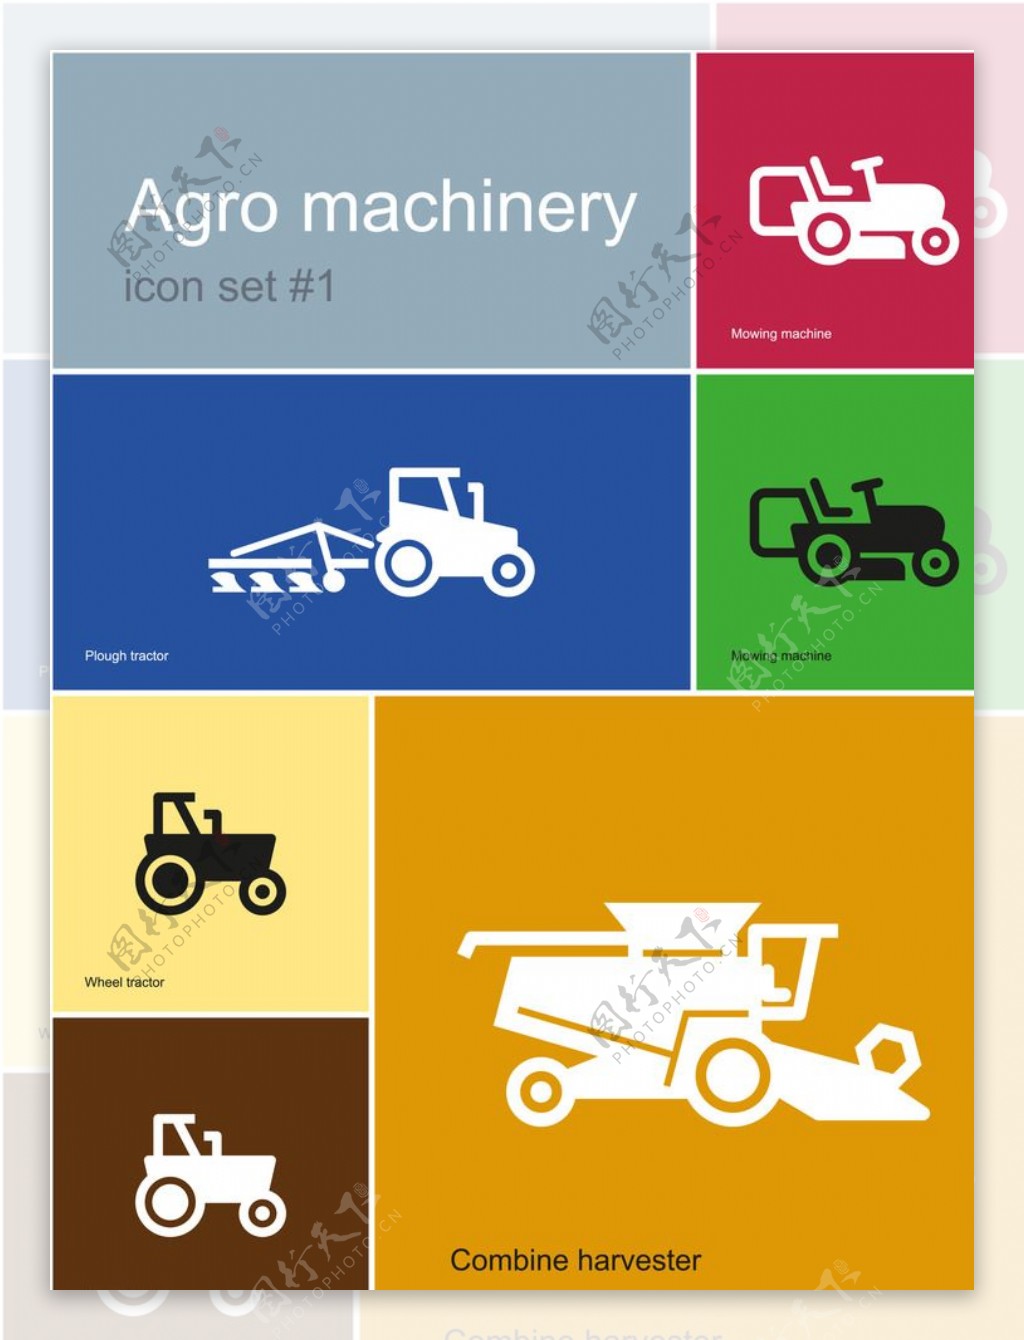 农业机械图片